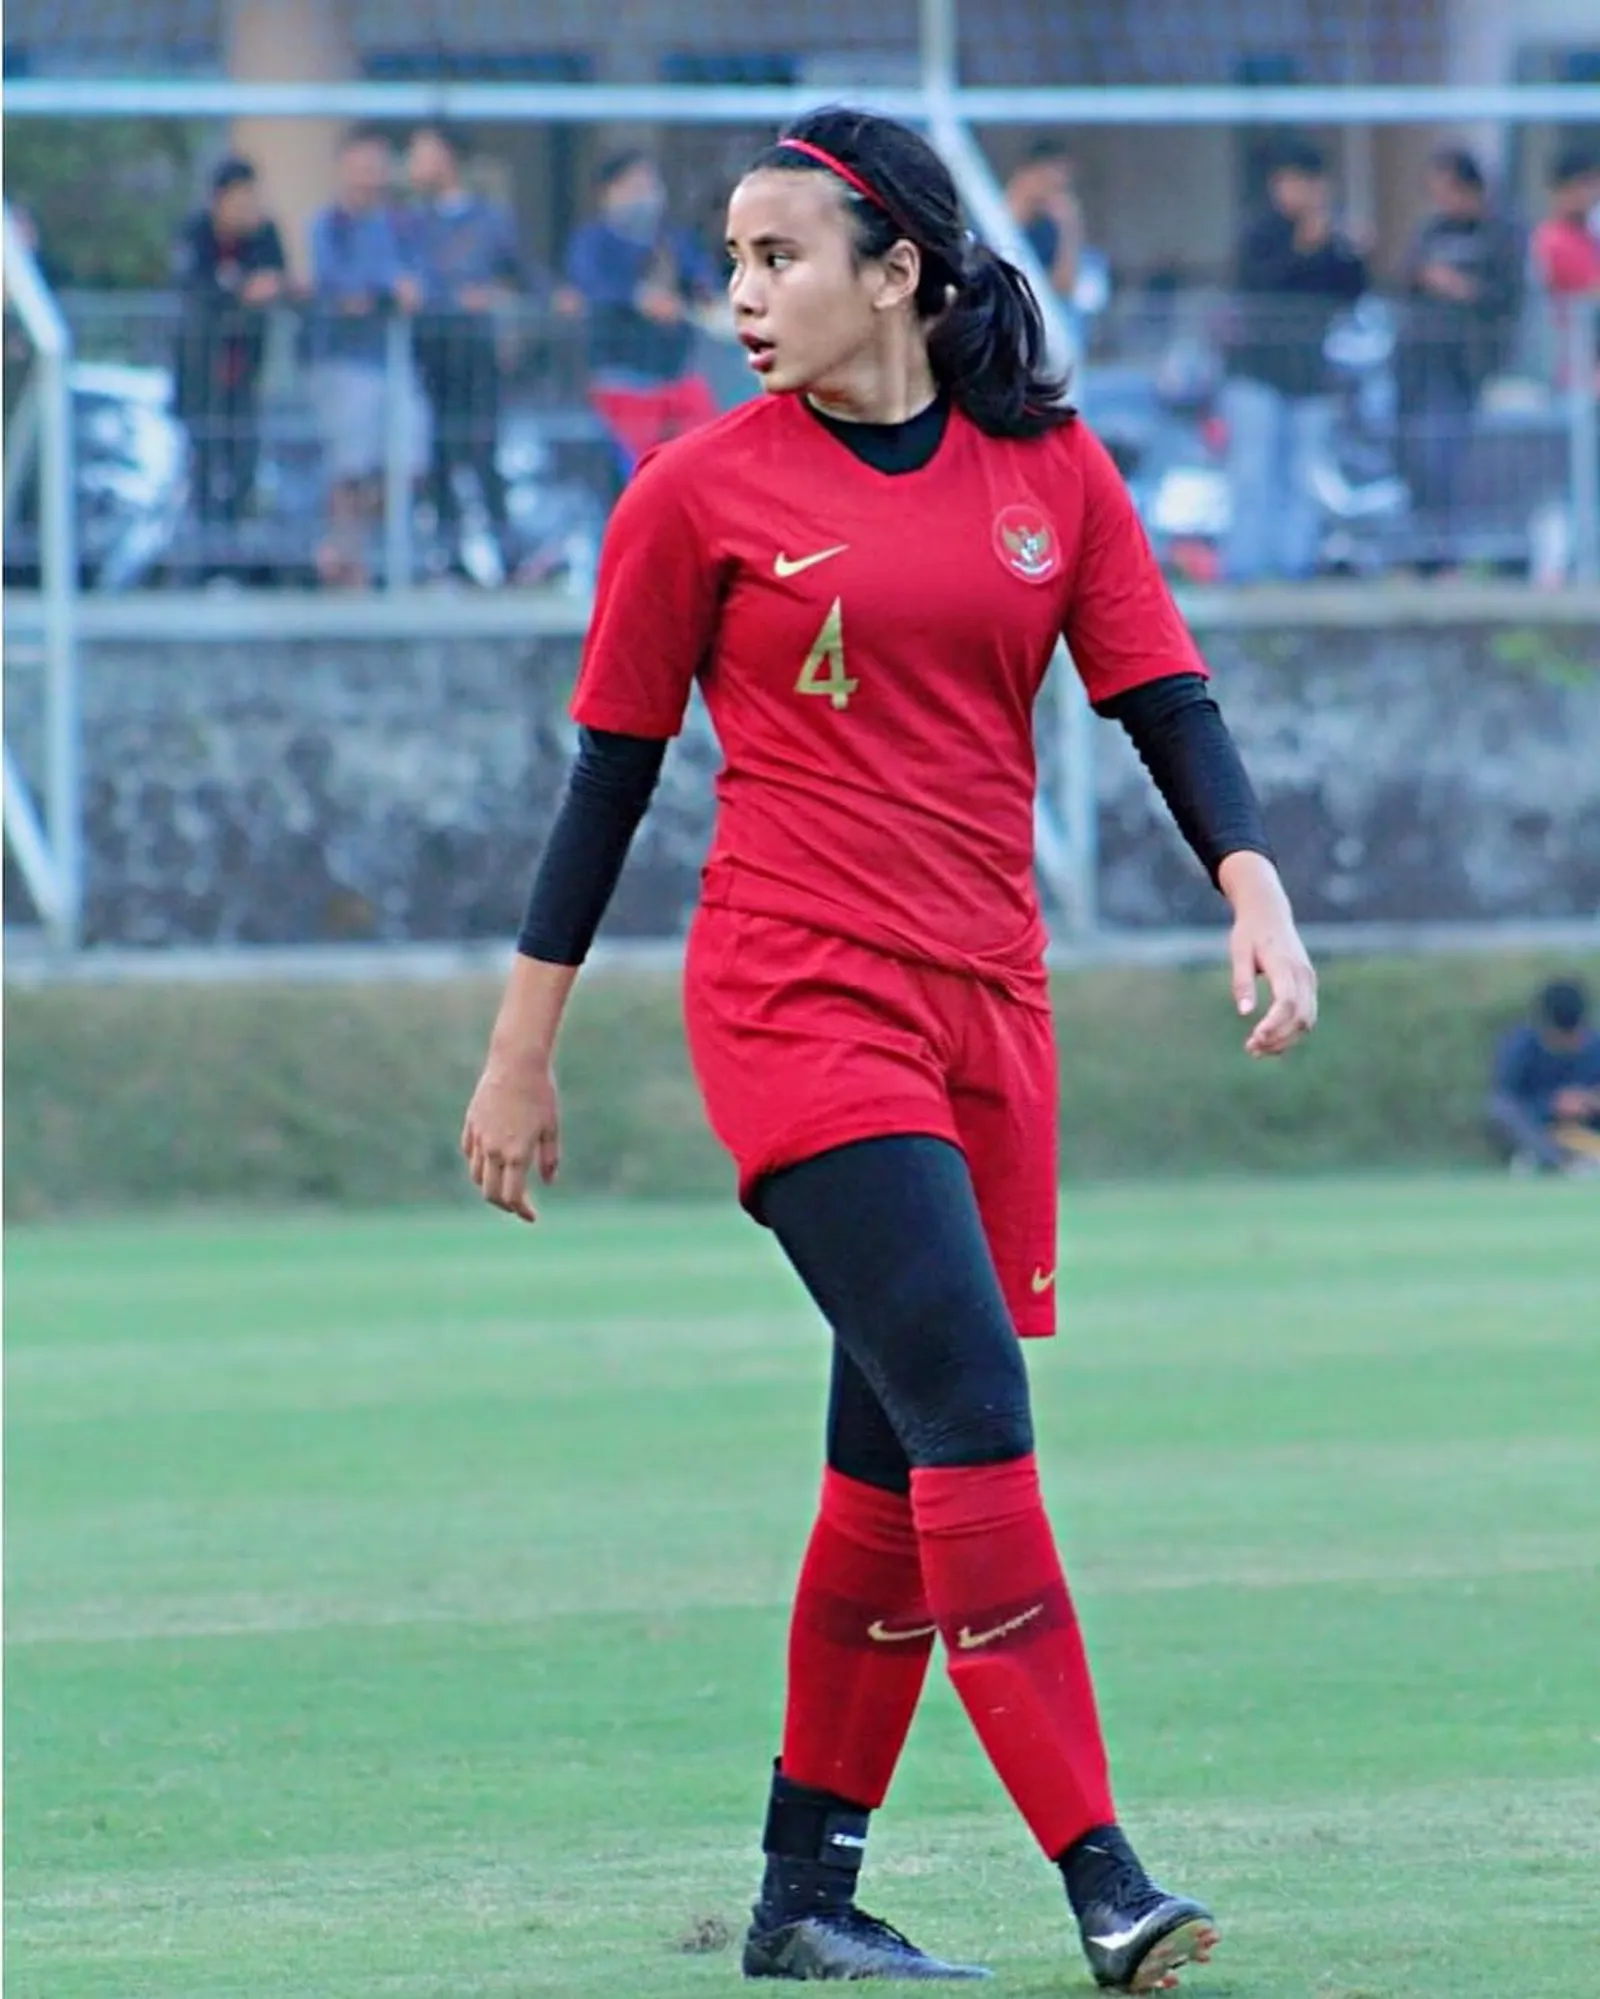 Gaya Asli Shalika Aurelia, Pesepak Bola Putri Pertama di Klub Eropa